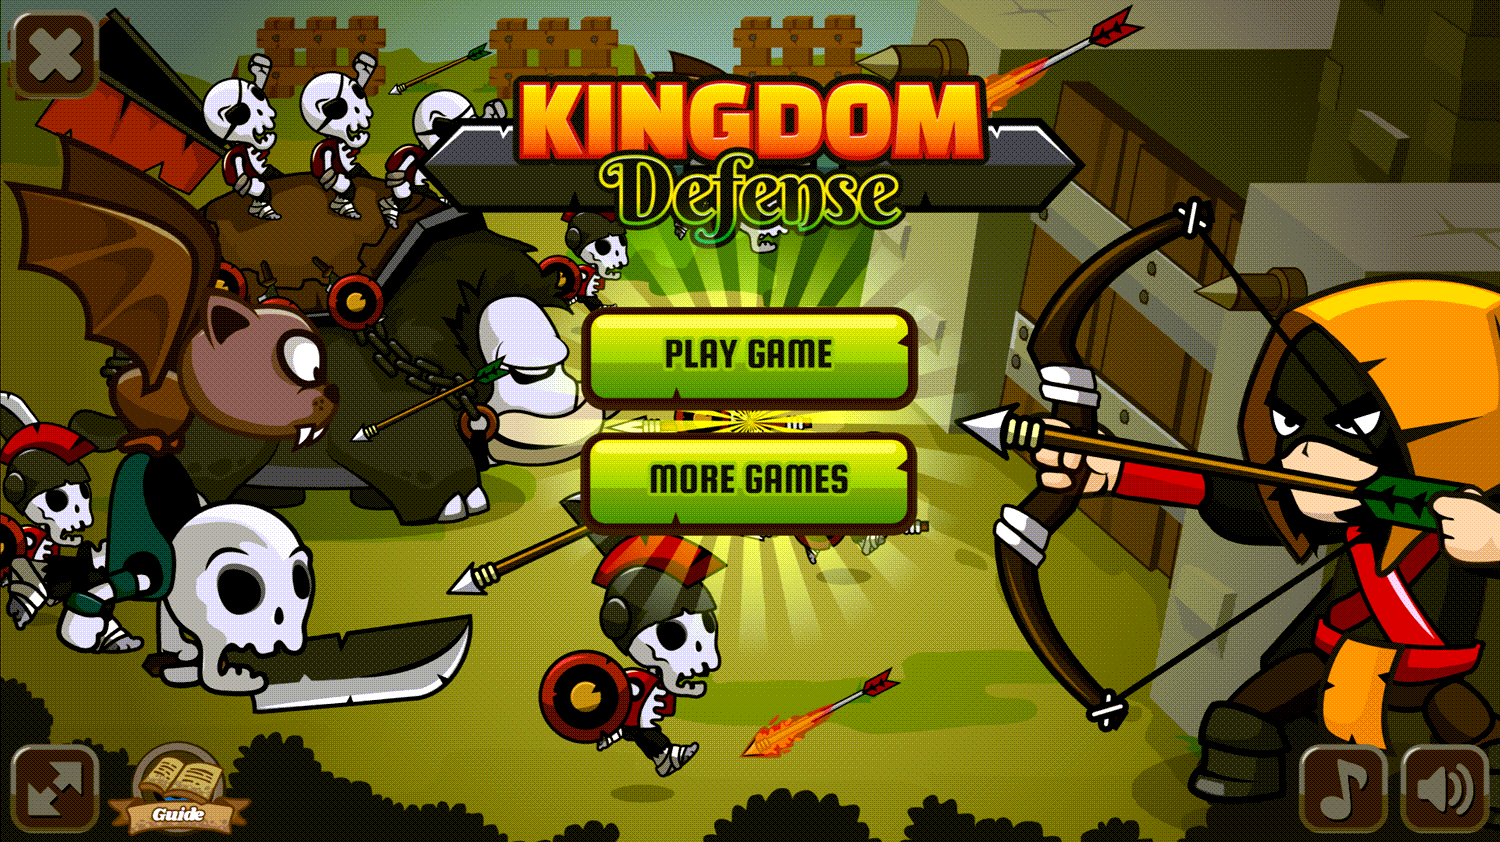 Kingdom Defense Welcome Screen Screenshot.